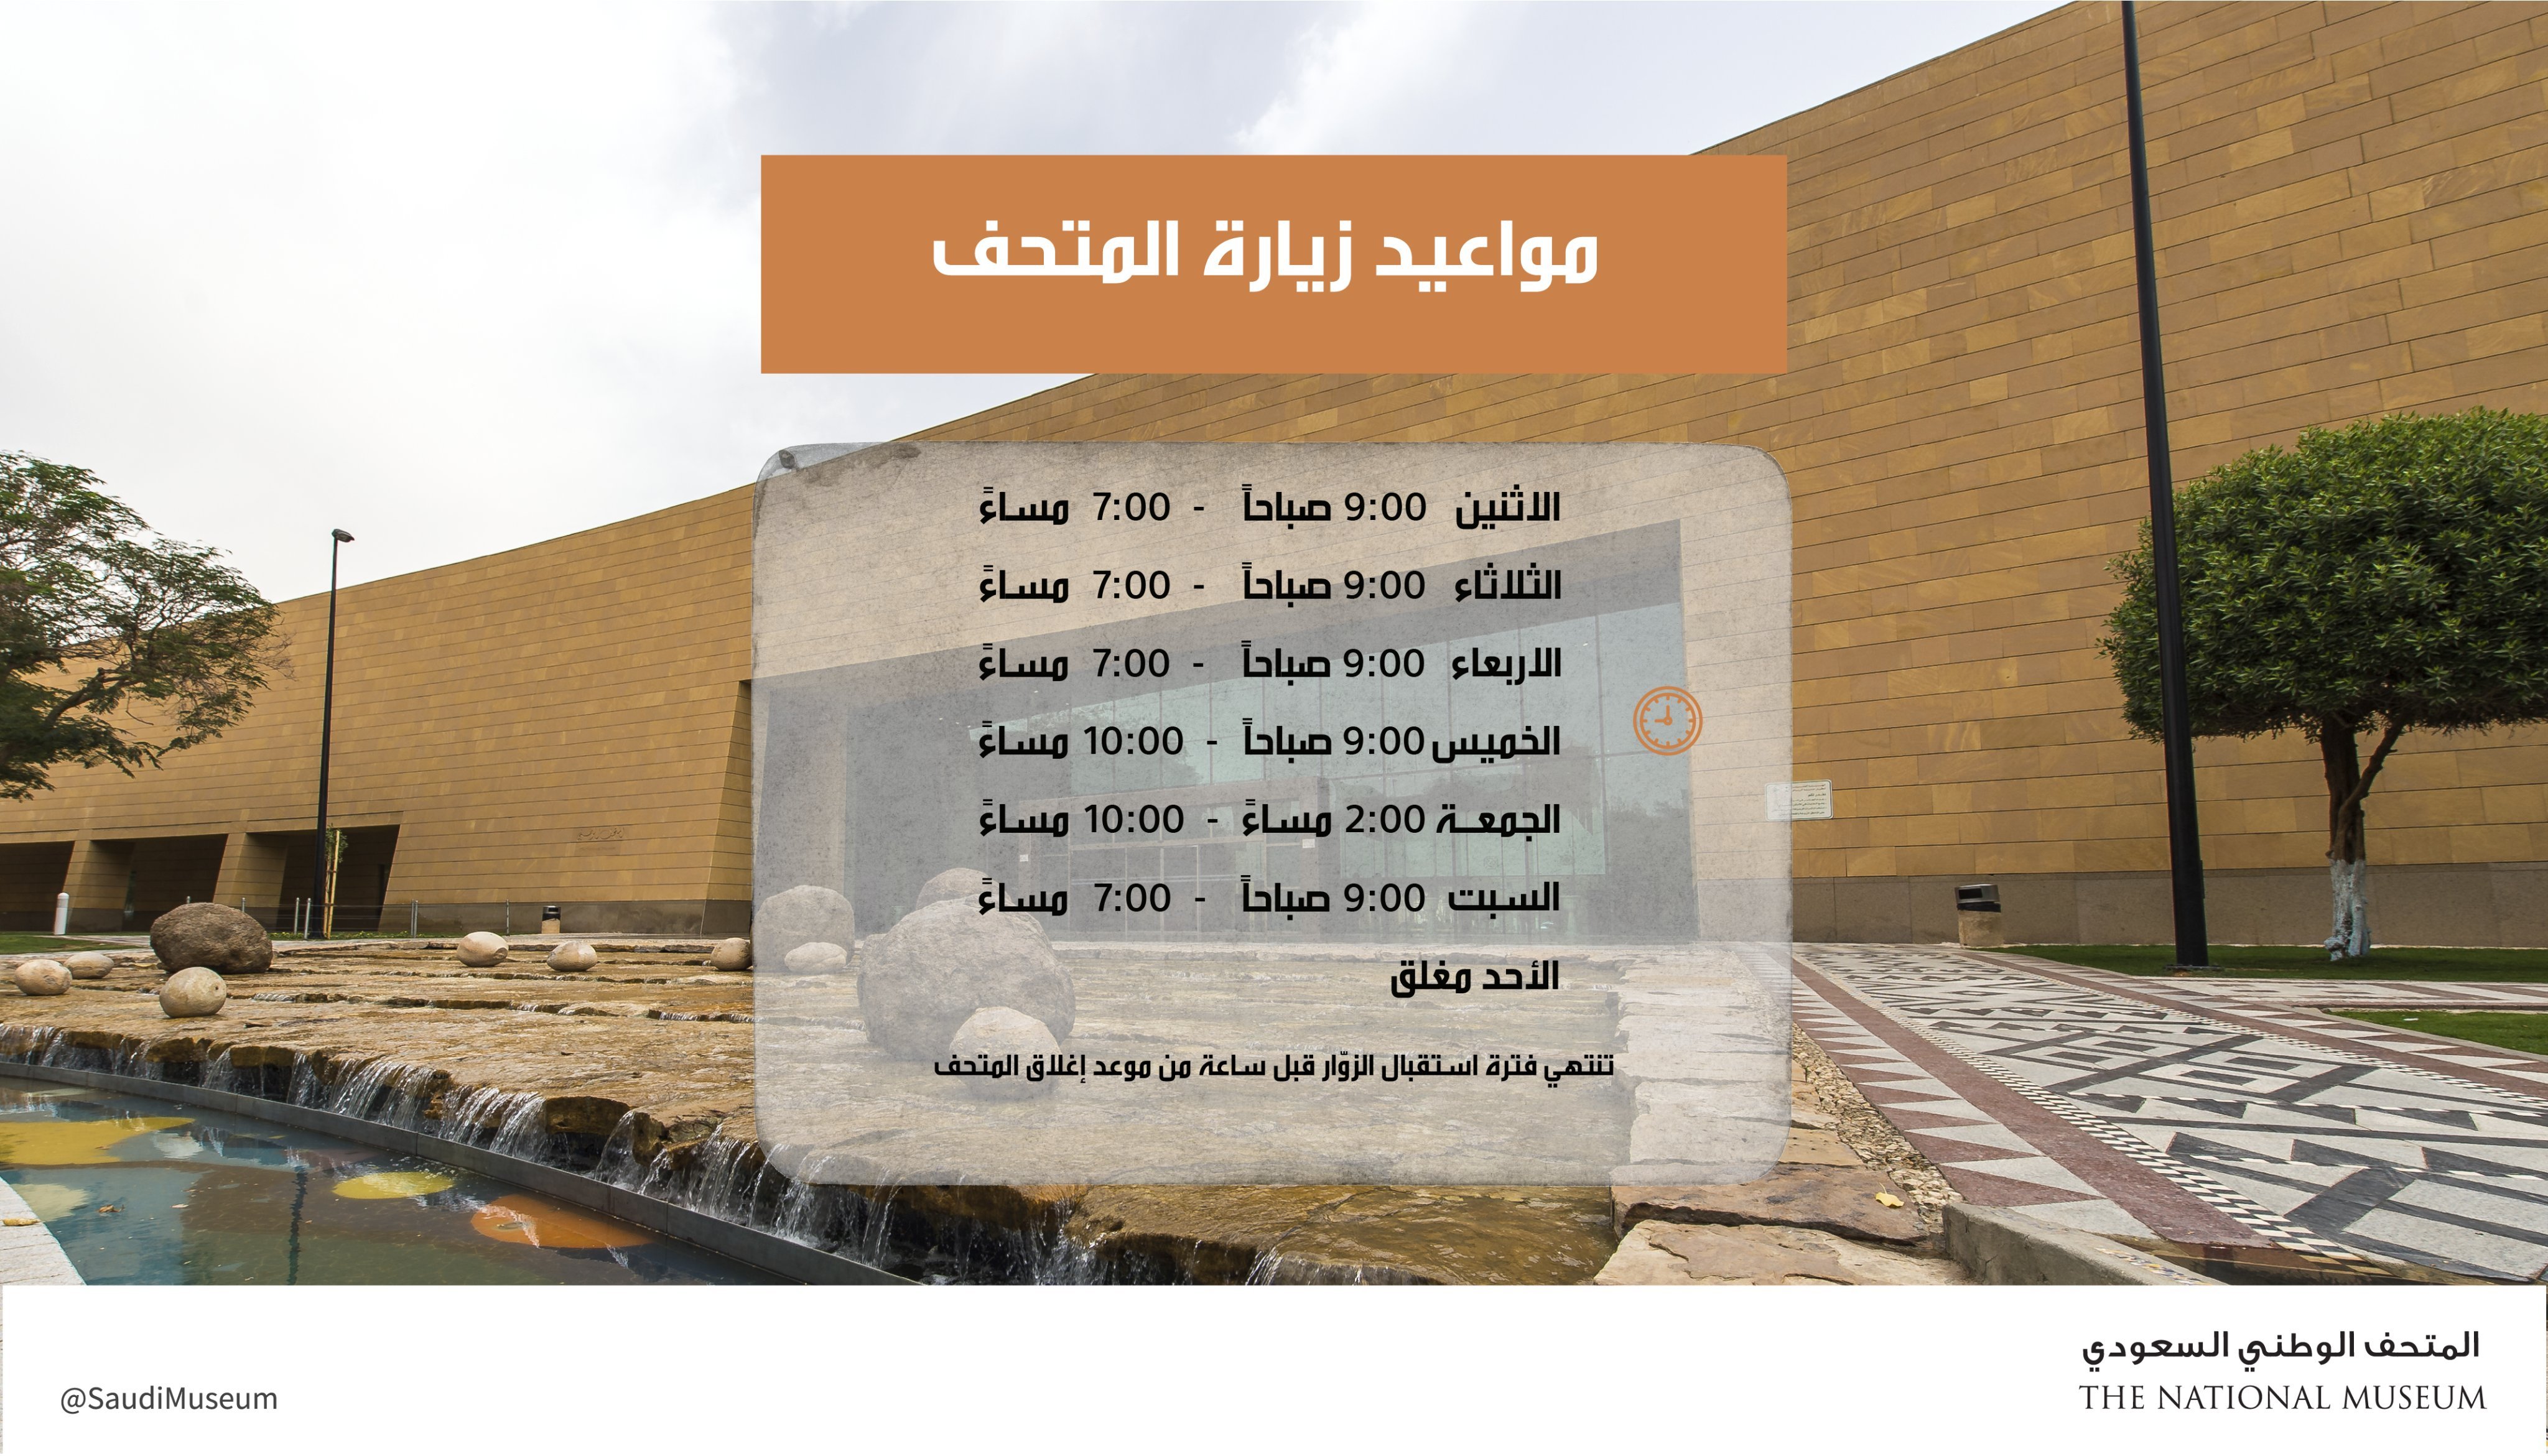 مواعيد زيارة وبرنامج المتحف الوطني السعودي مايو 2022